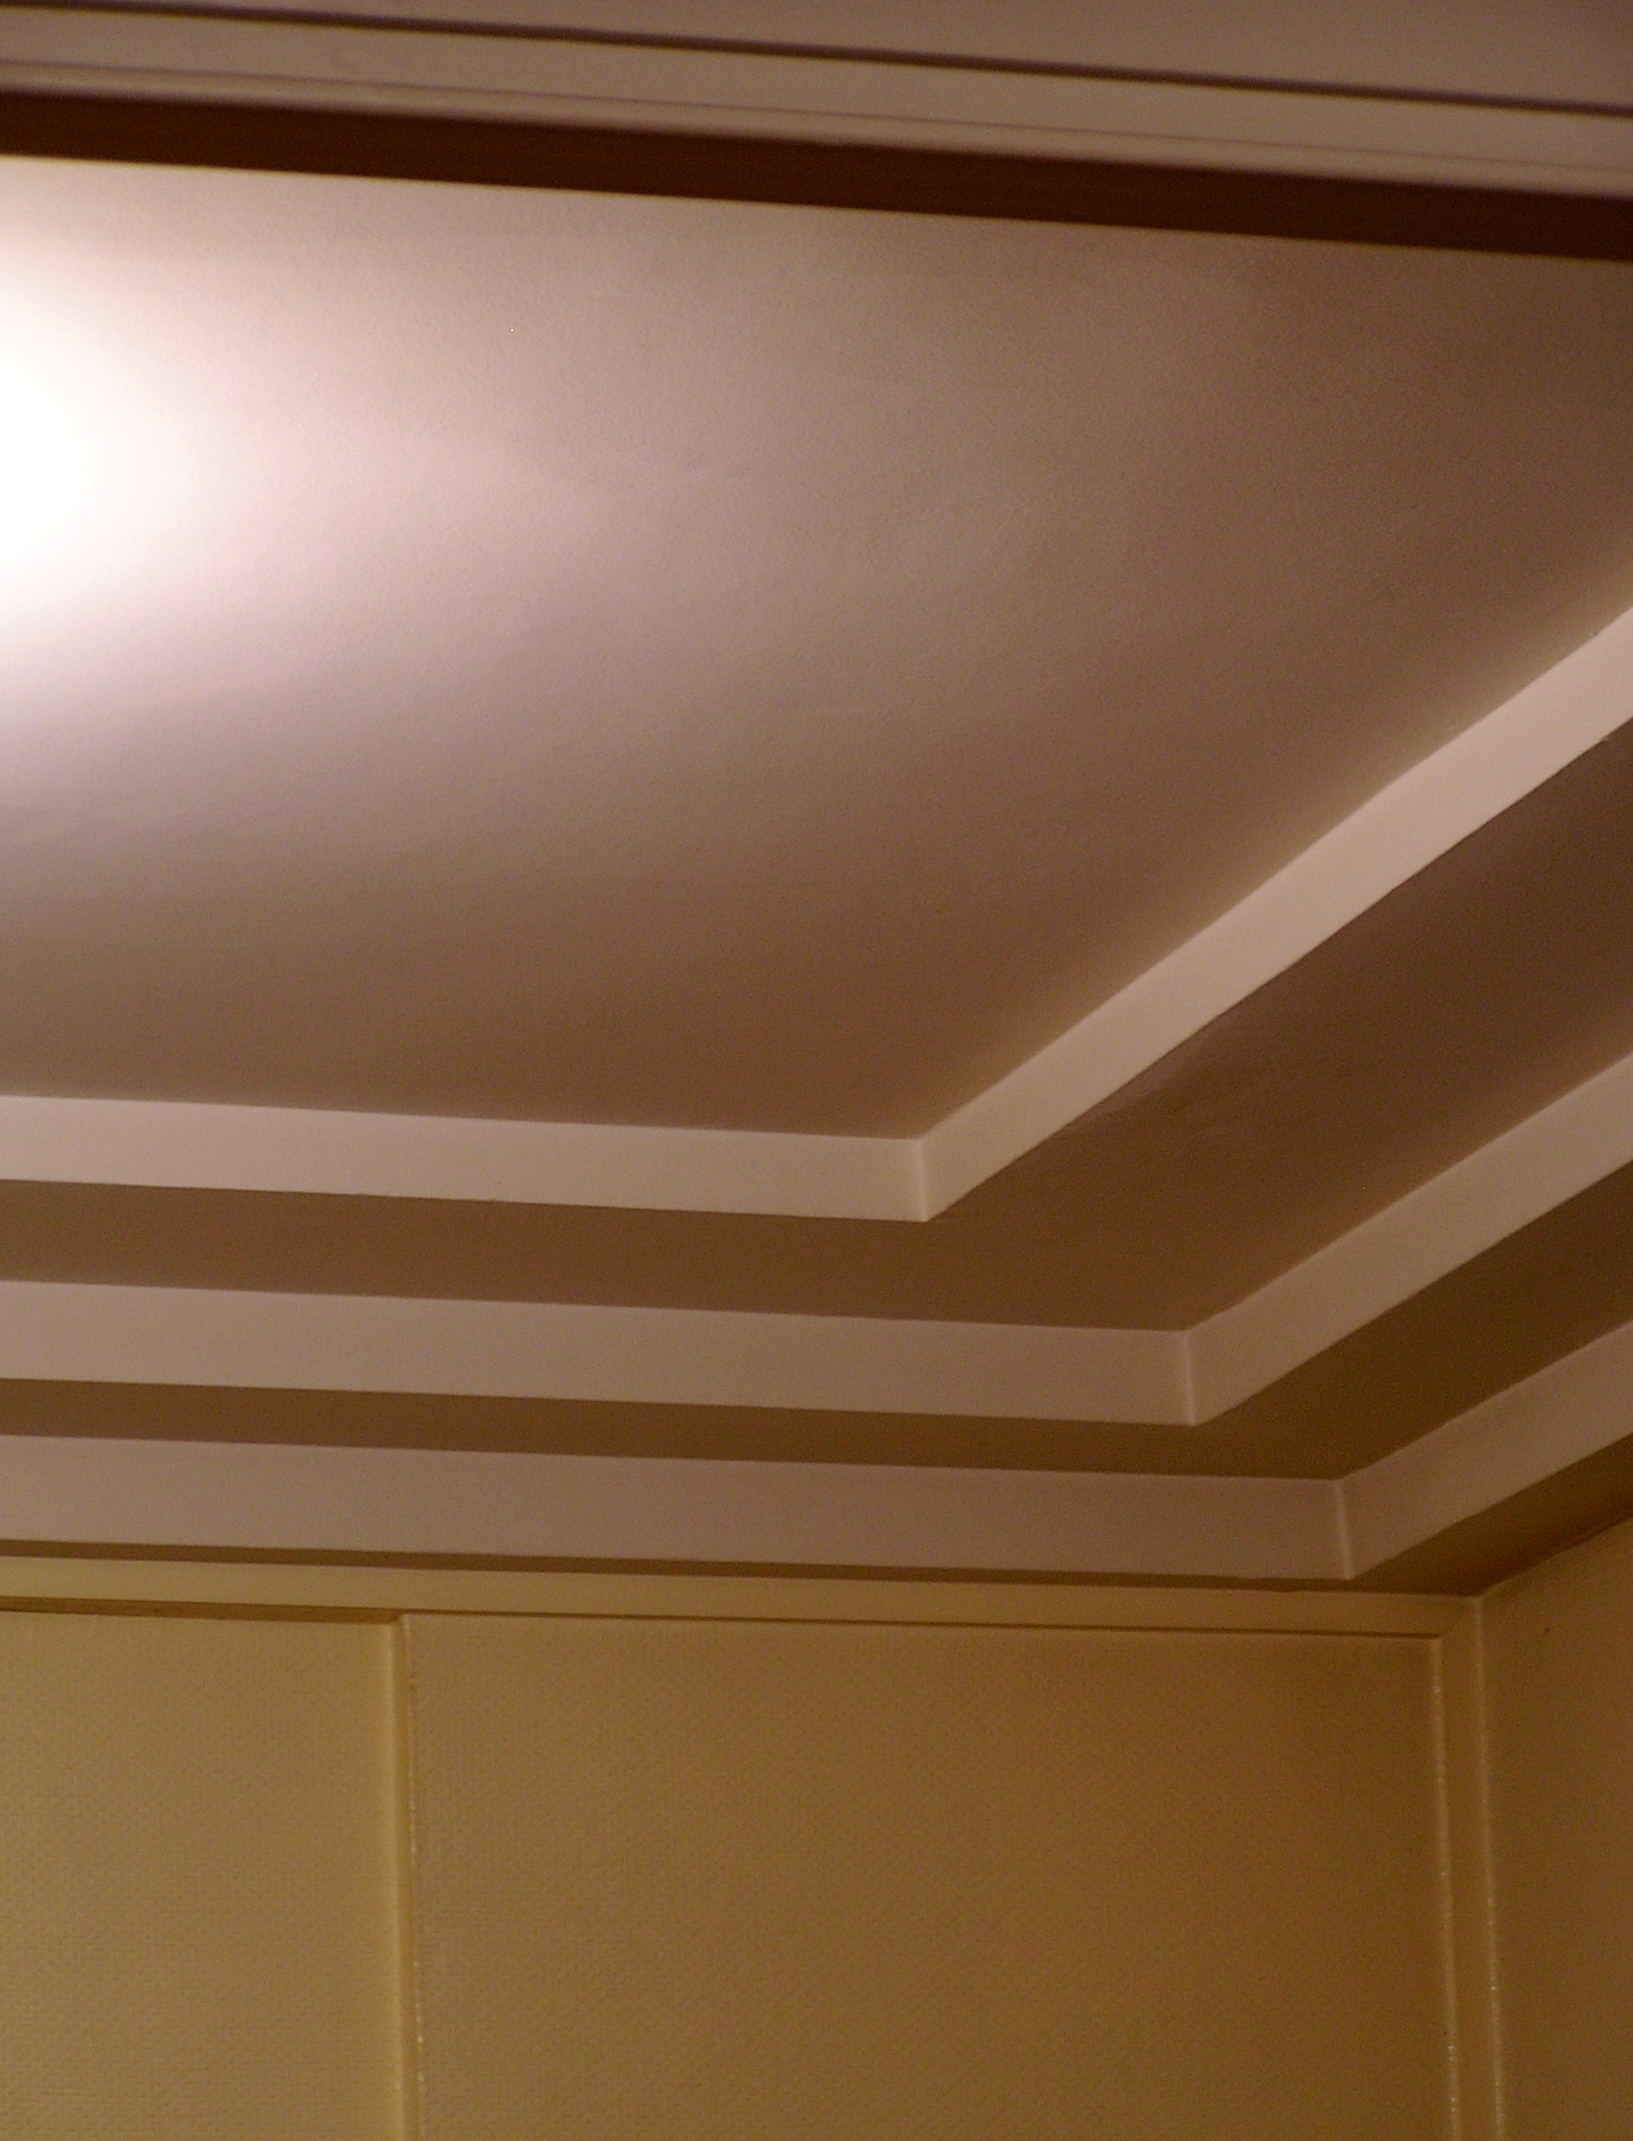 Le listel est une moulure qui apporte du relief, comme ici au plafond. © Môsieur J., CC BY-SA 2.0, Flickr